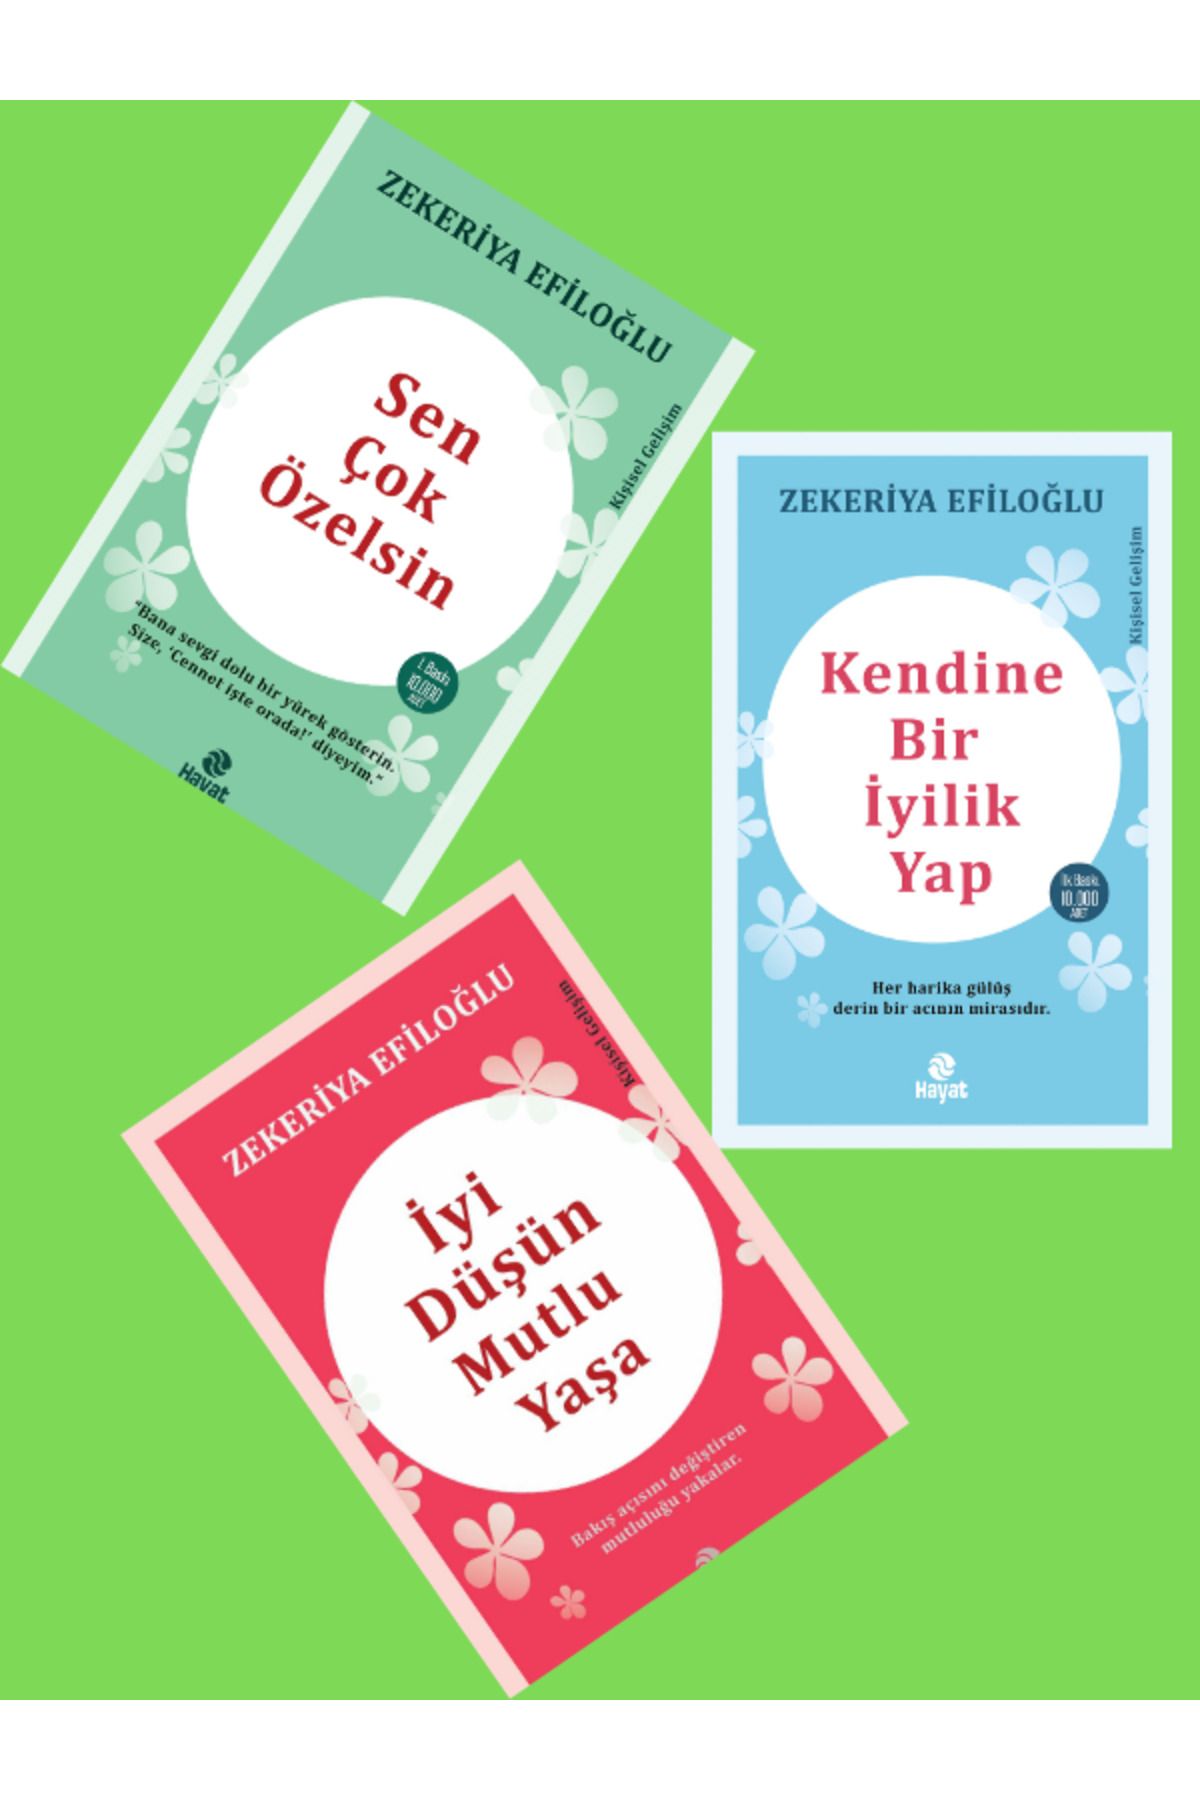 Hayat Yayınları Zekeriya Efiloğlu Mutlu Yaşam Seti- Kendine Bir Iyilik Yap, Sen Çok Özelsin, Iyi Düşün Mutlu Yaşa